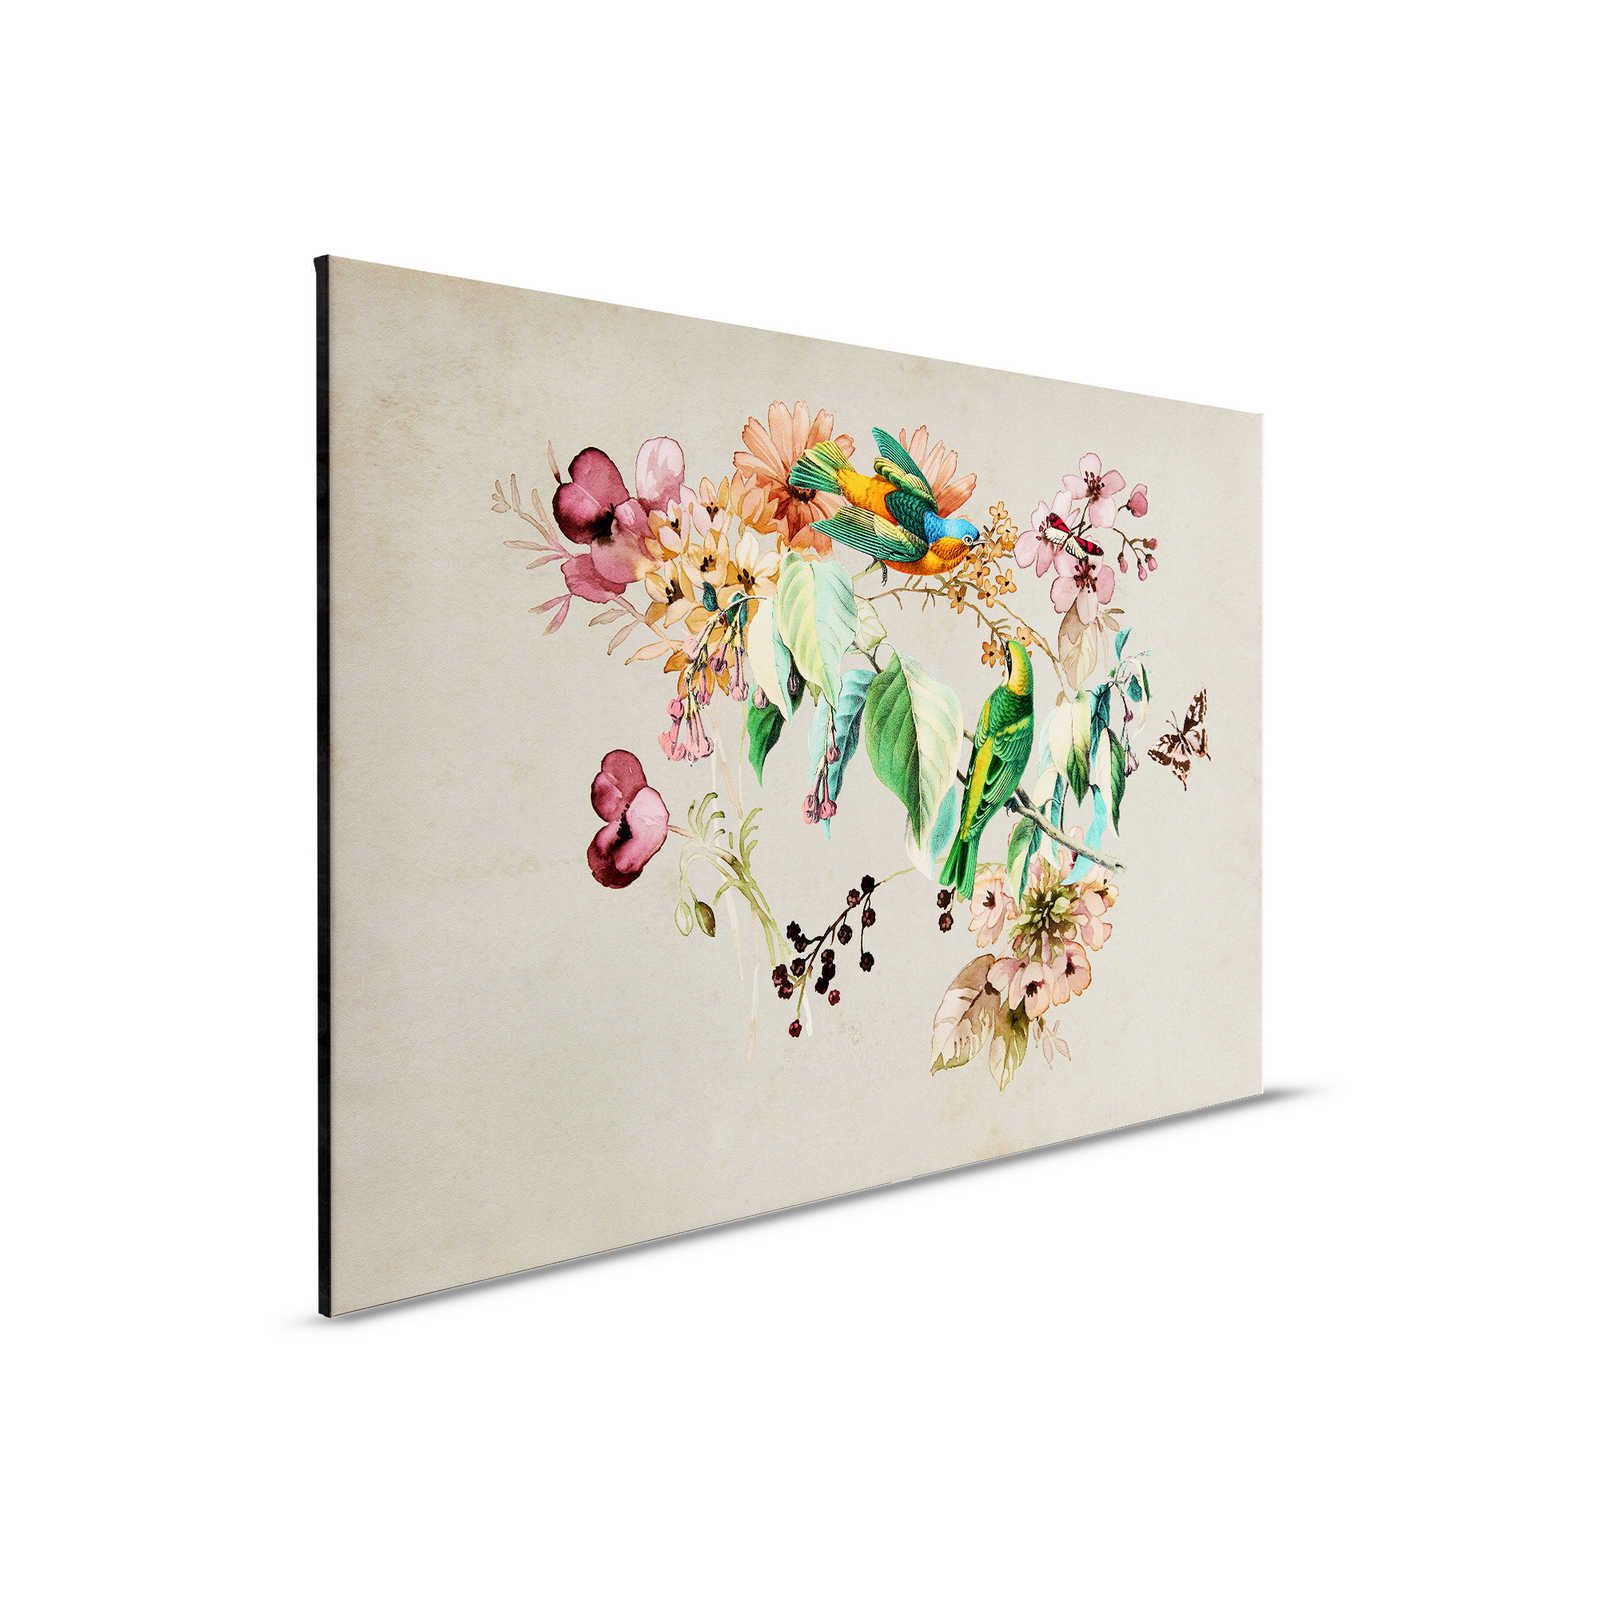 Love Nest 1 - Canvas schilderij met aquarel bloemen & kleurrijke vogels - 0.90 m x 0.60 m
